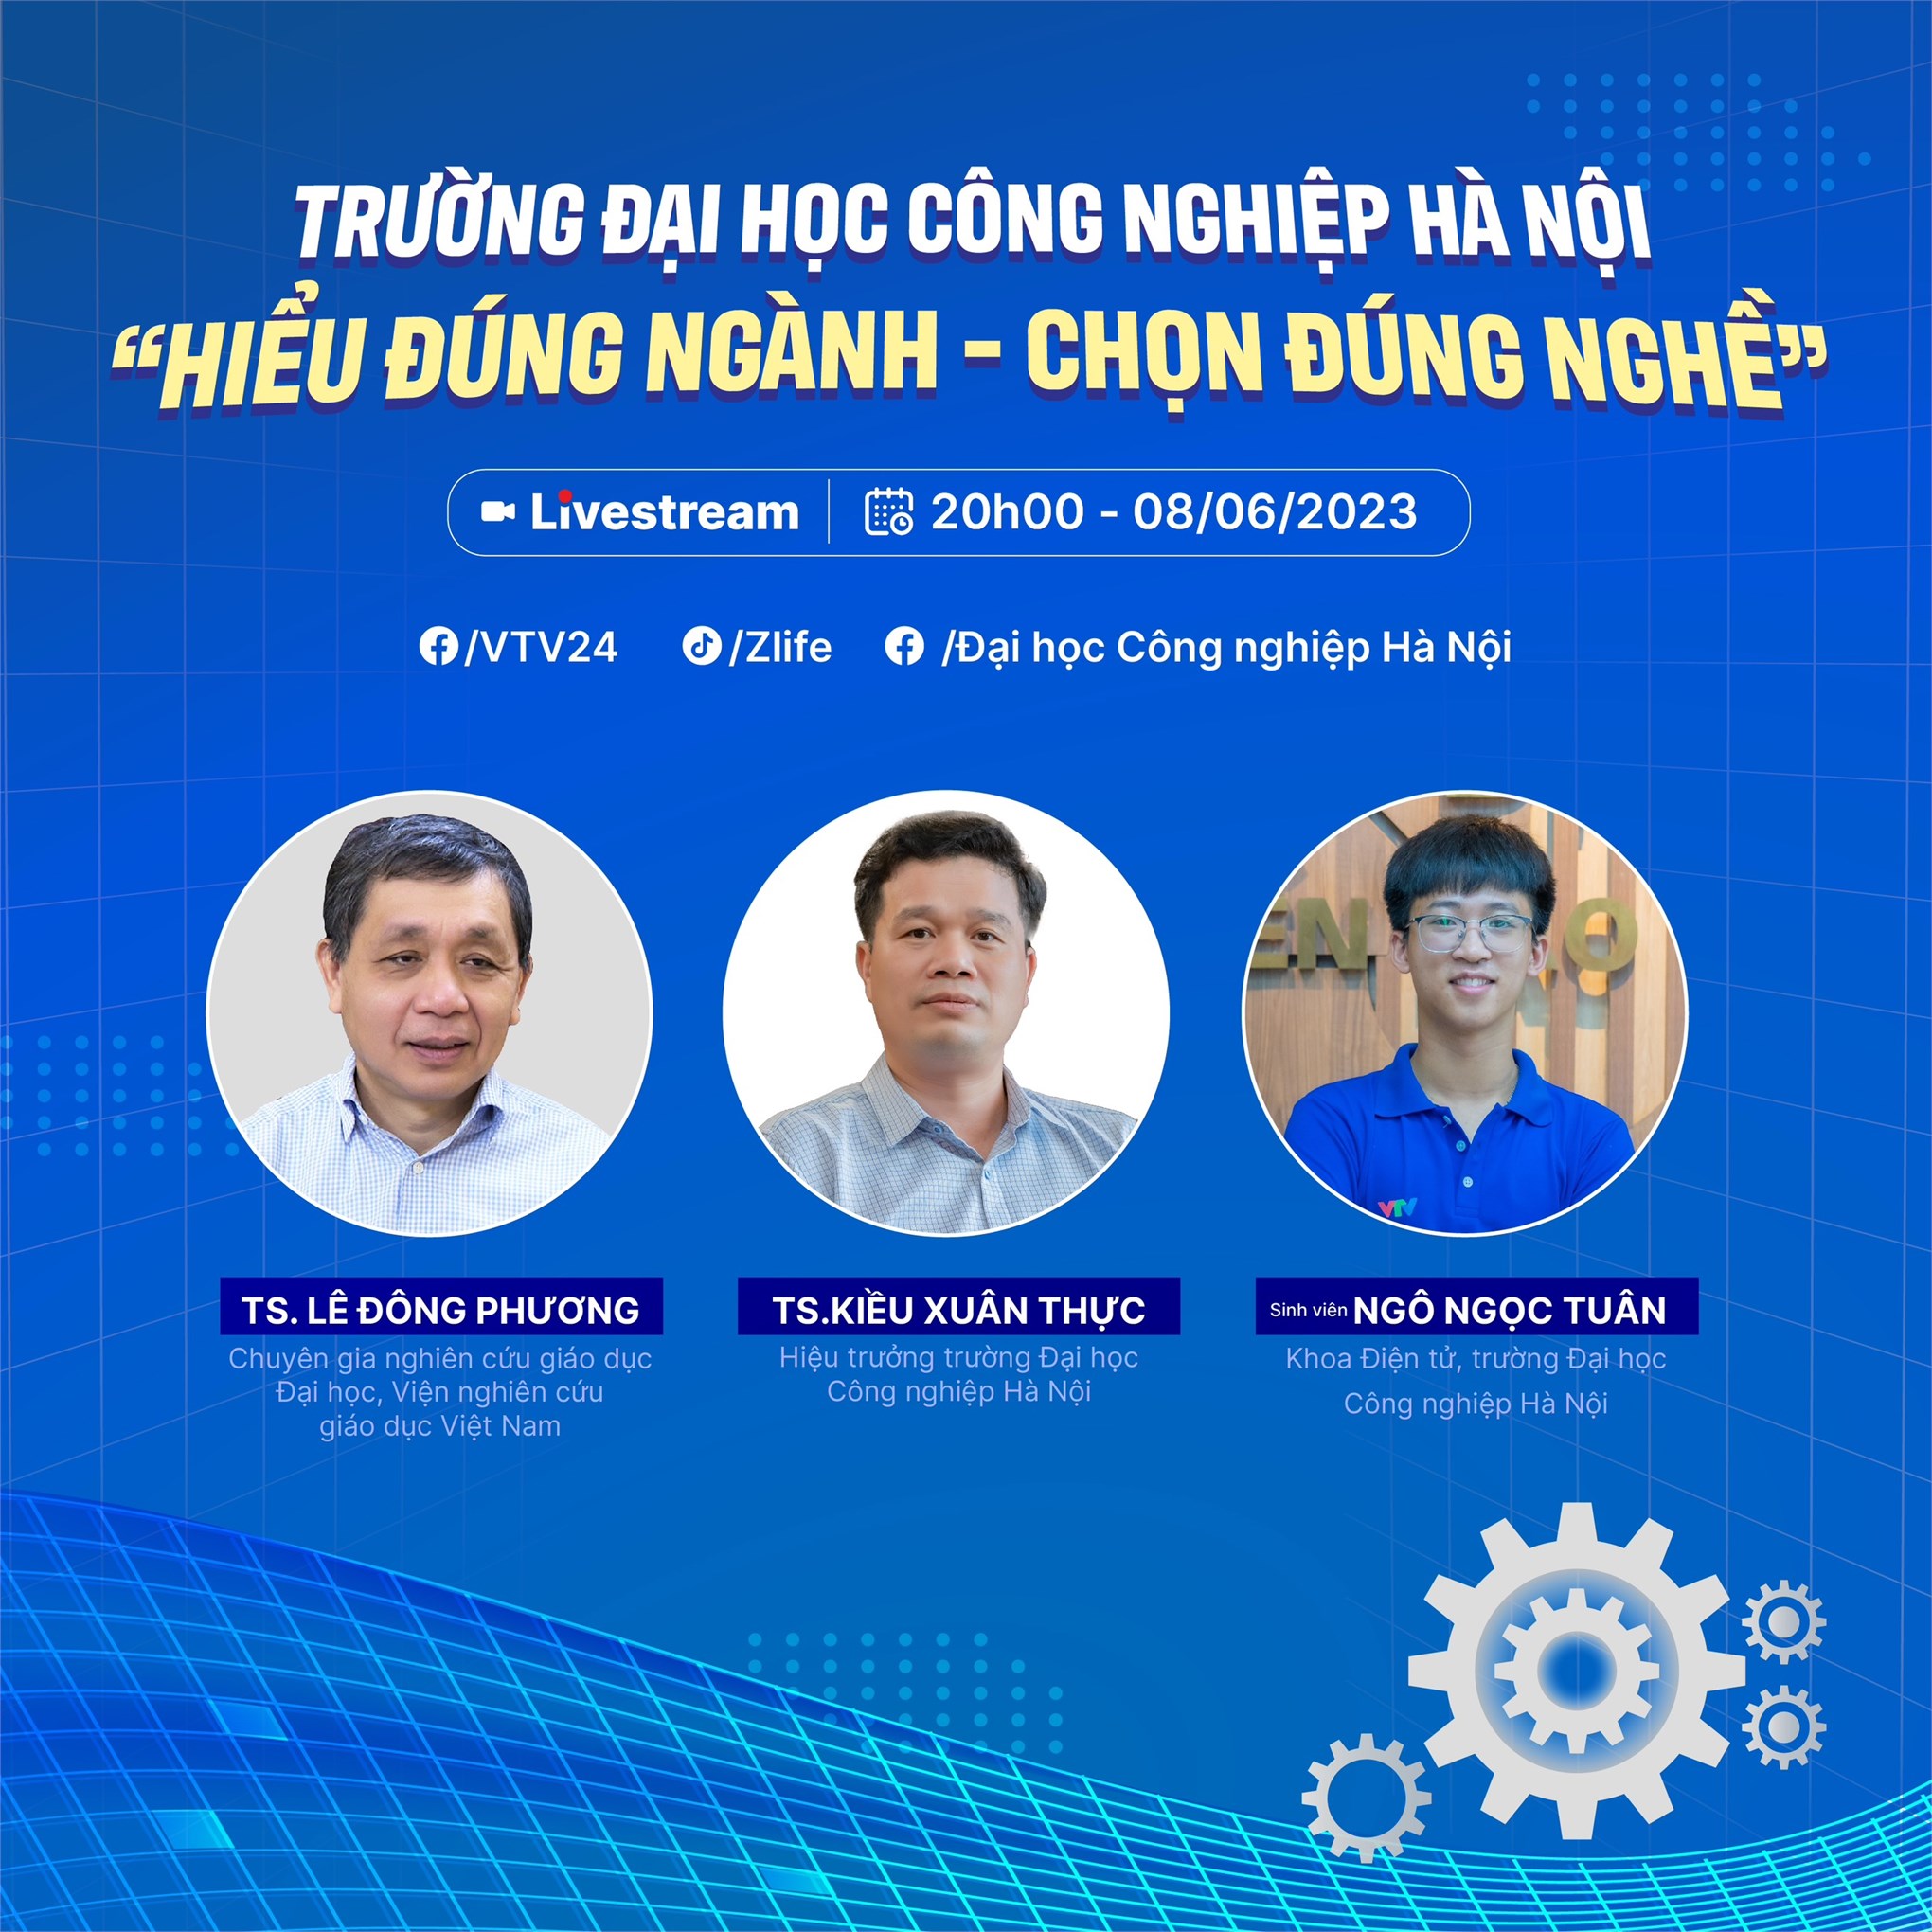 Tọa đàm trực tuyến `Trường Đại học Công nghiệp Hà Nội: Hiểu đúng ngành - chọn đúng nghề`